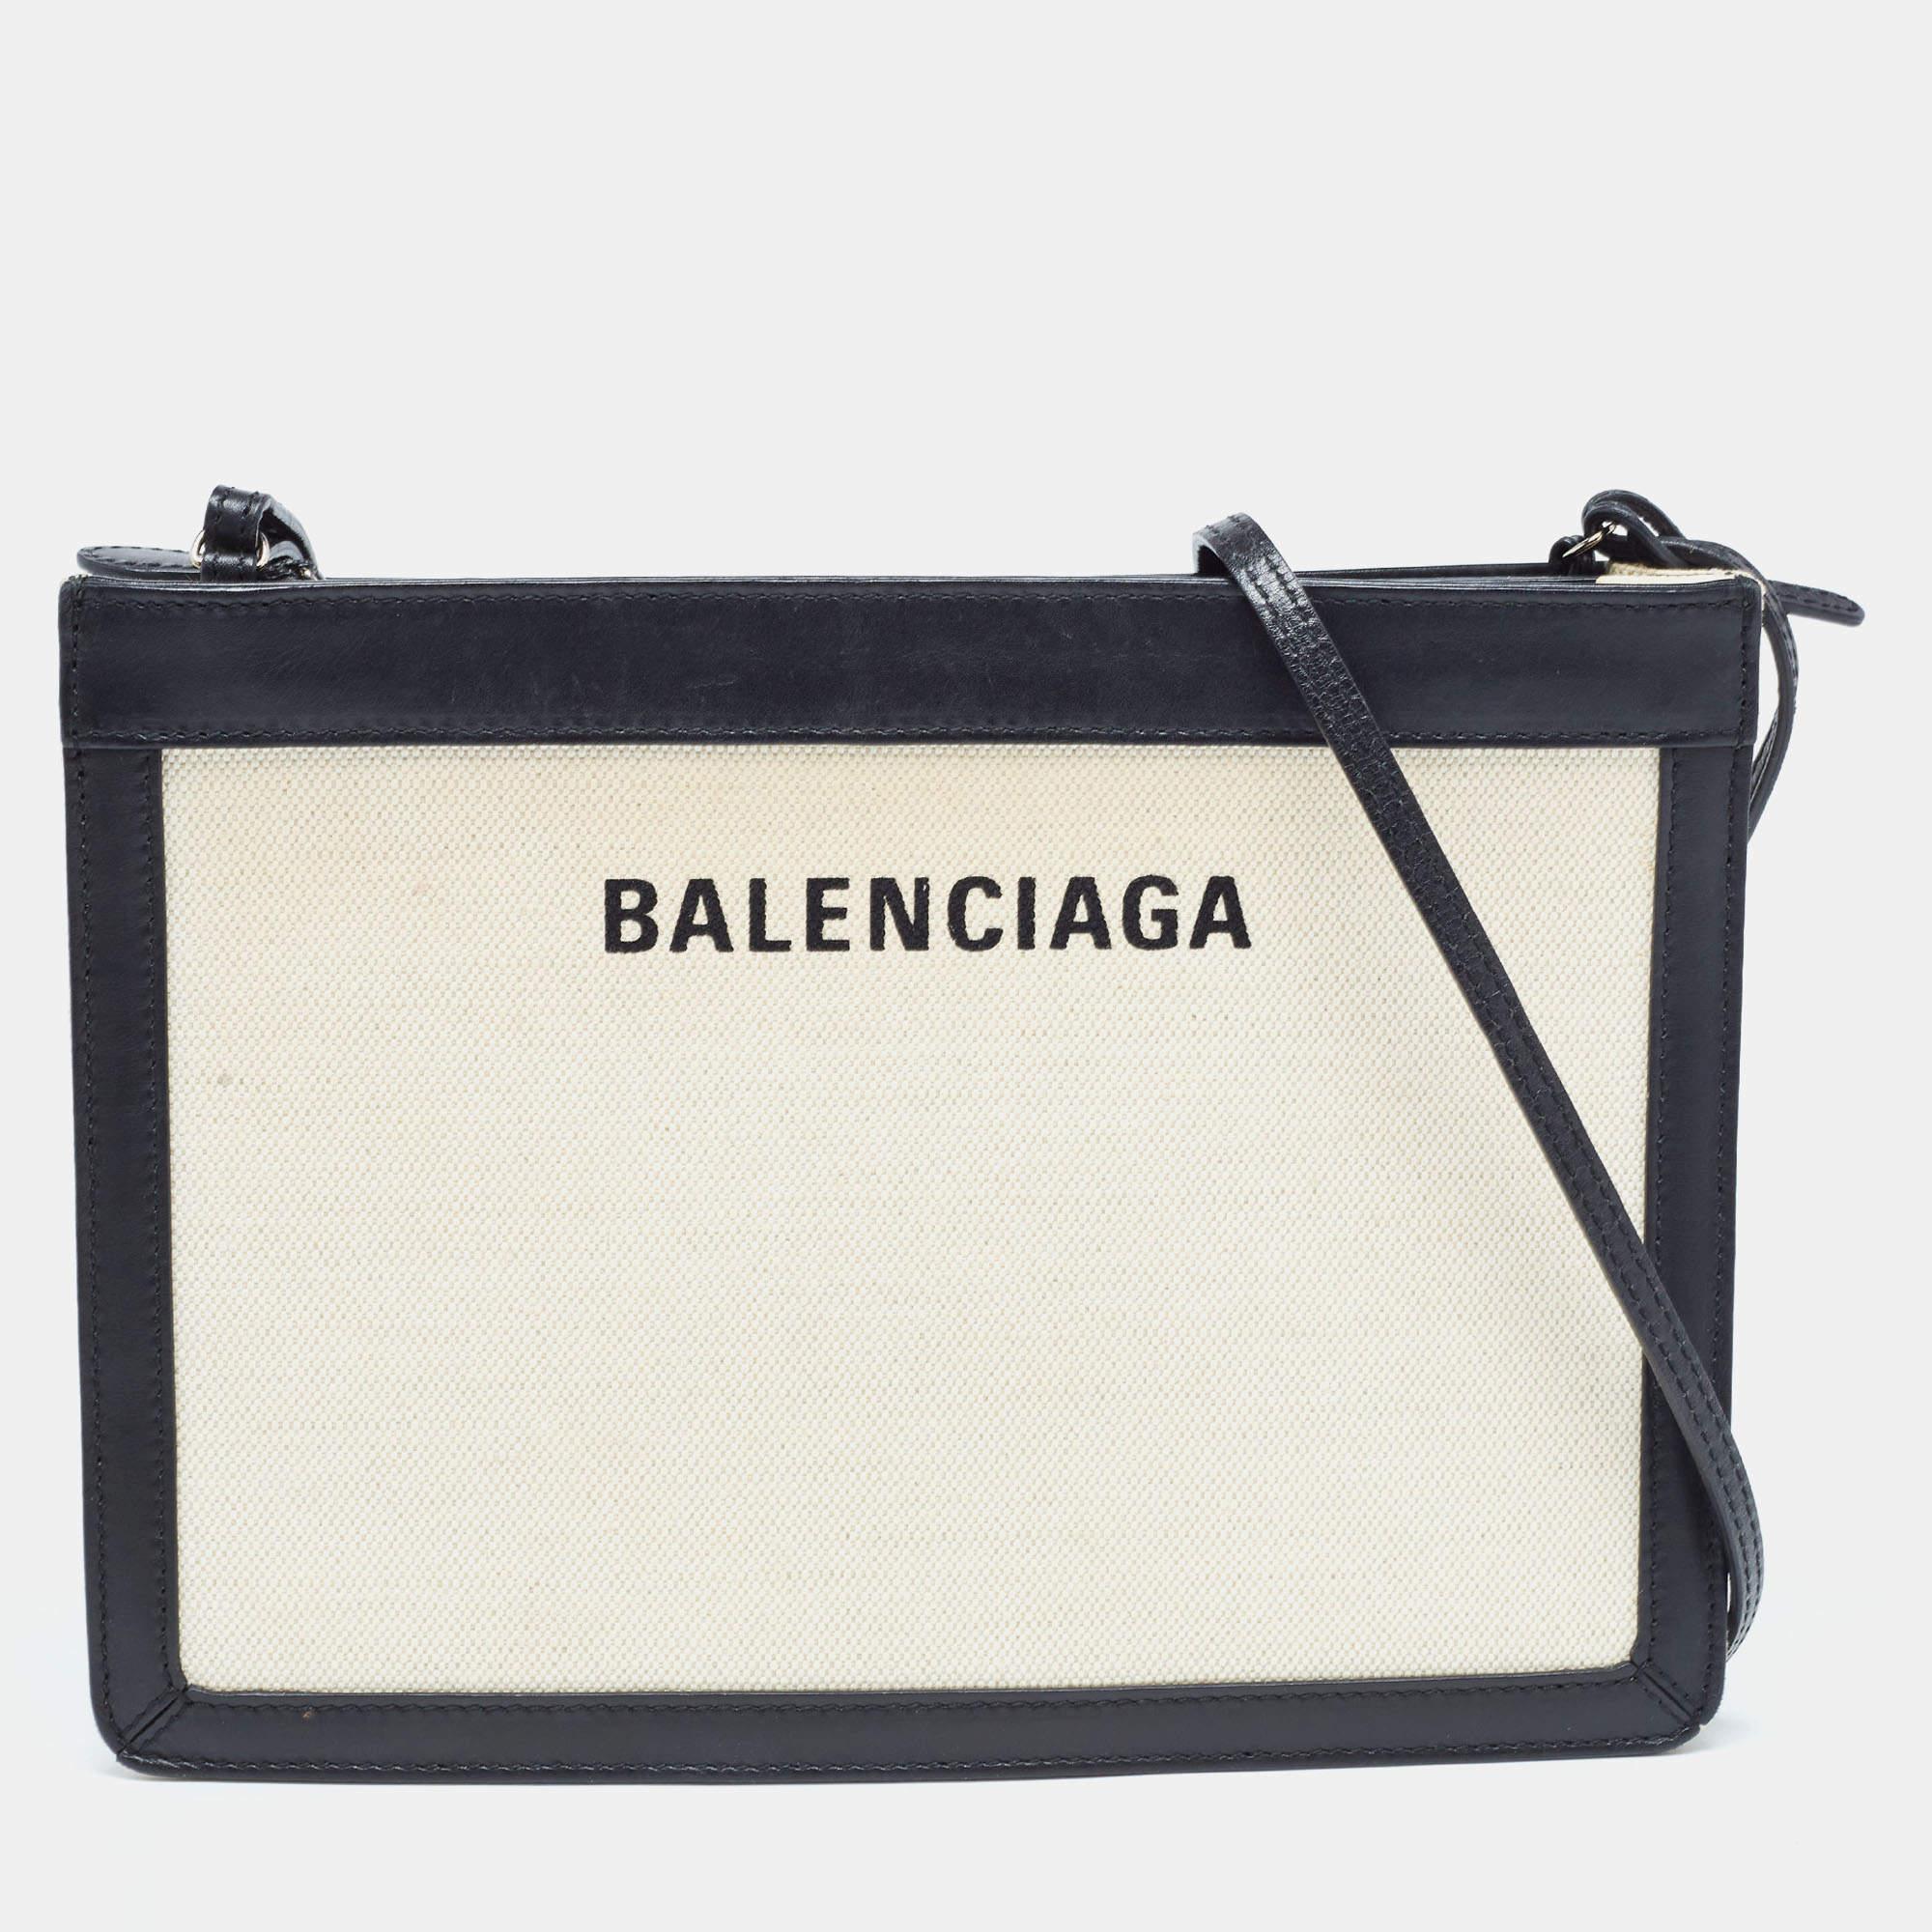 Ce ravissant sac à bandoulière de Balenciaga apportera une touche d'élégance à votre look du jour. Il est doté d'un extérieur en toile et cuir, d'un intérieur en toile, de ferrures argentées et d'une bandoulière.

